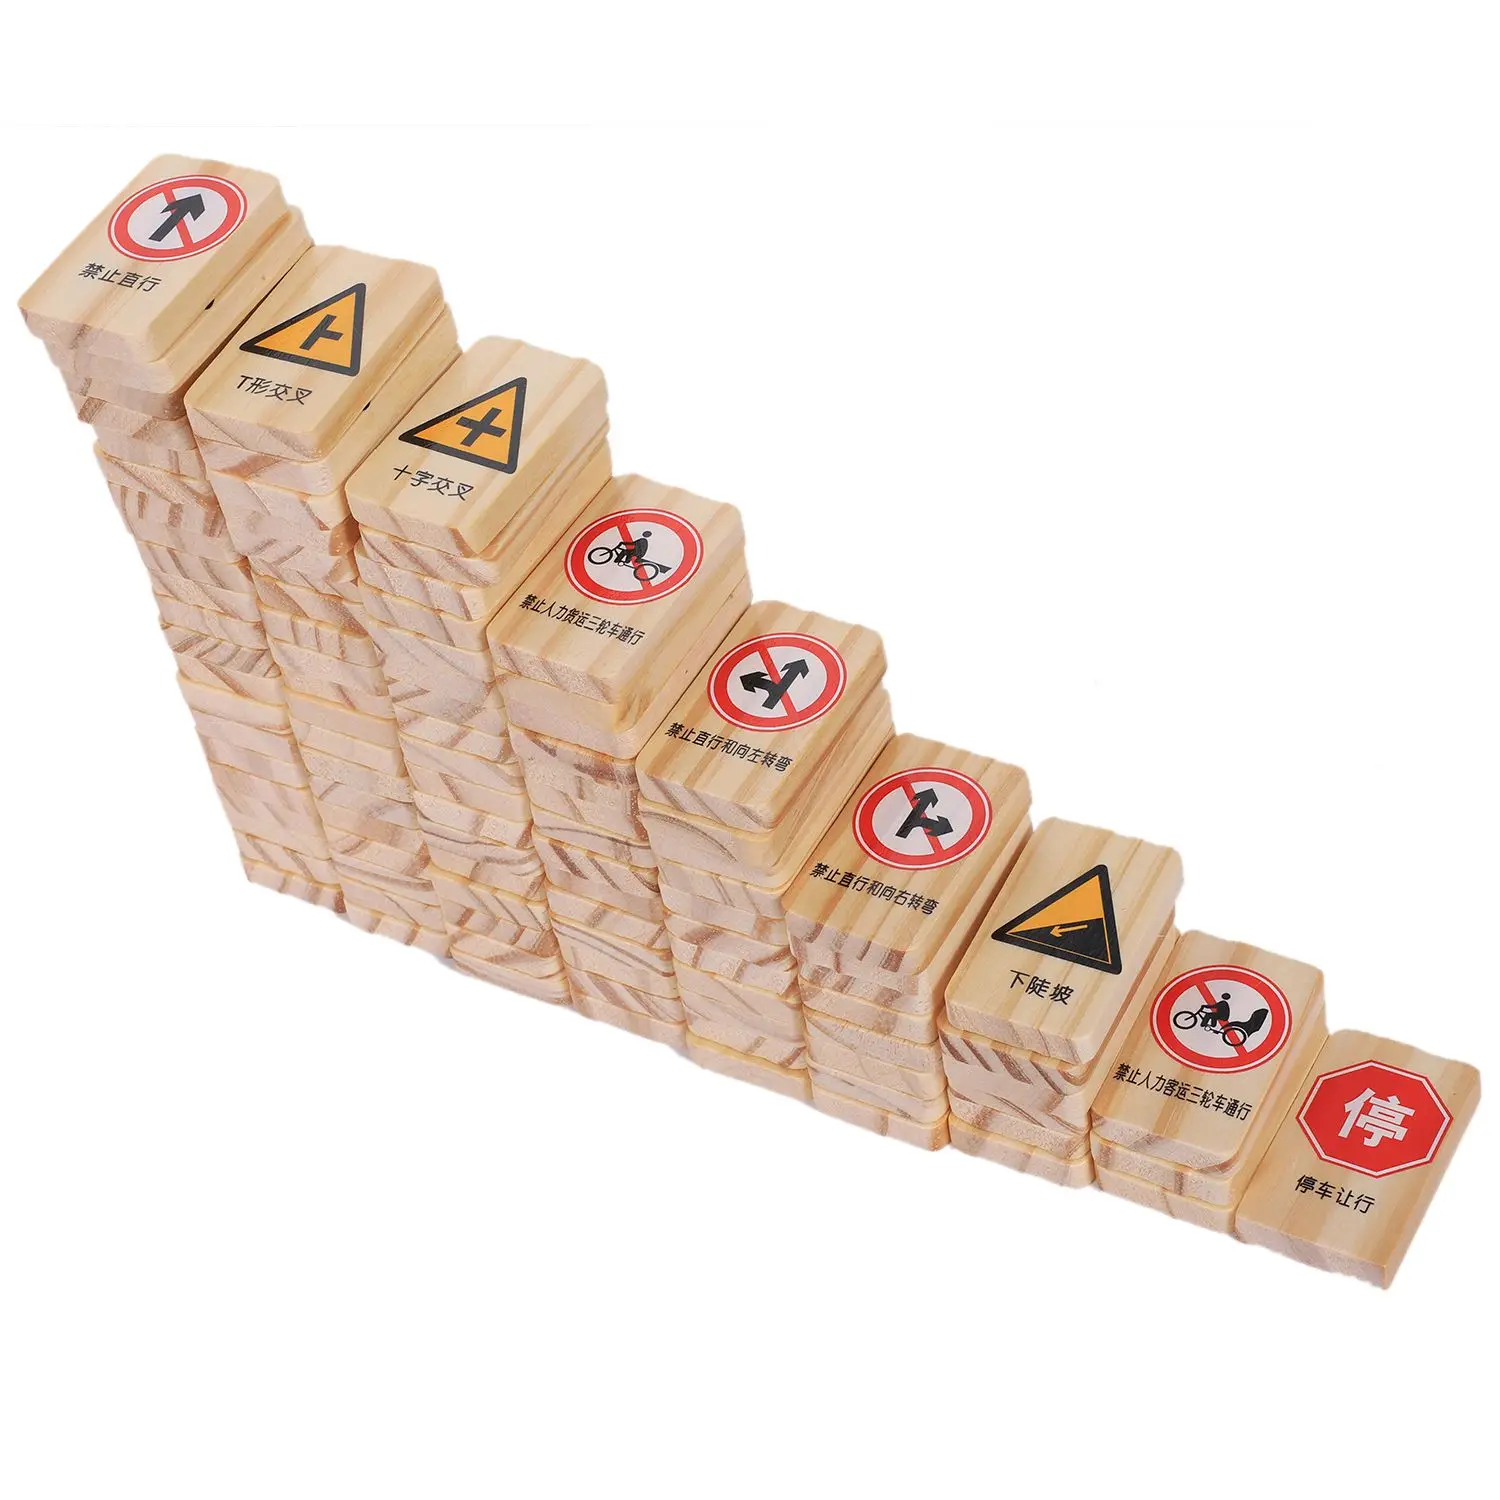 FBIL-MWZ 100 шт. автомобиль логотип дорожные знаки узор двусторонняя печать деревянный Domino блок игрушки для детей интеллект блоки